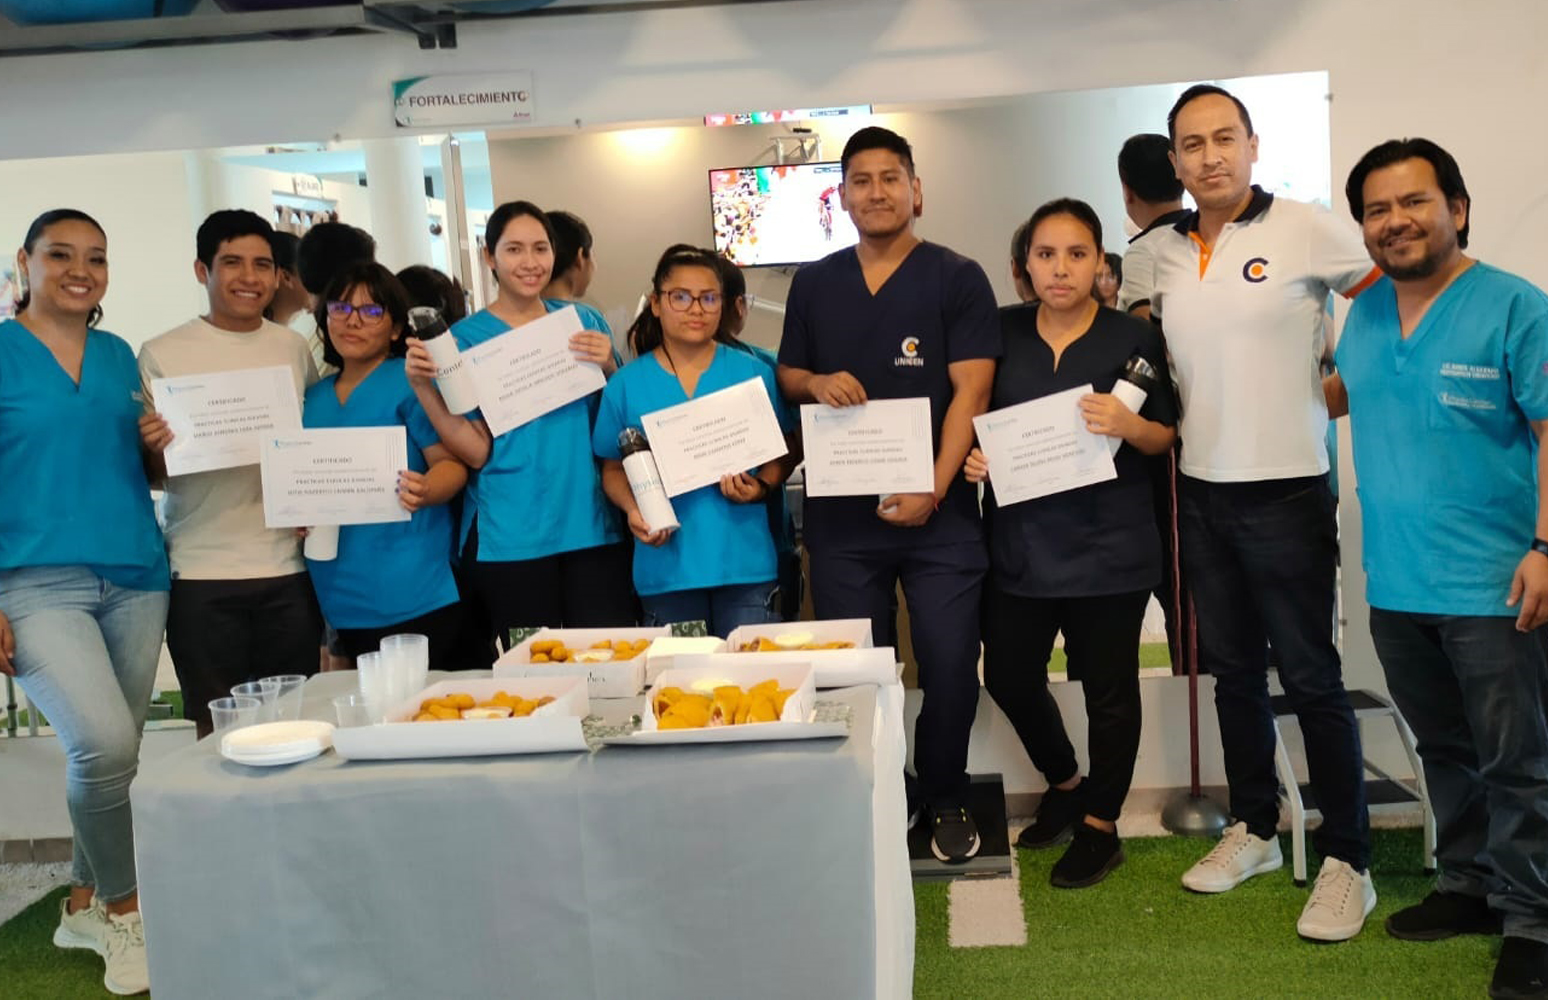 Estudiantes de Fisioterapia y Kinesiología recibieron reconocimientos de parte de Physiocenter por sus prácticas profesionales